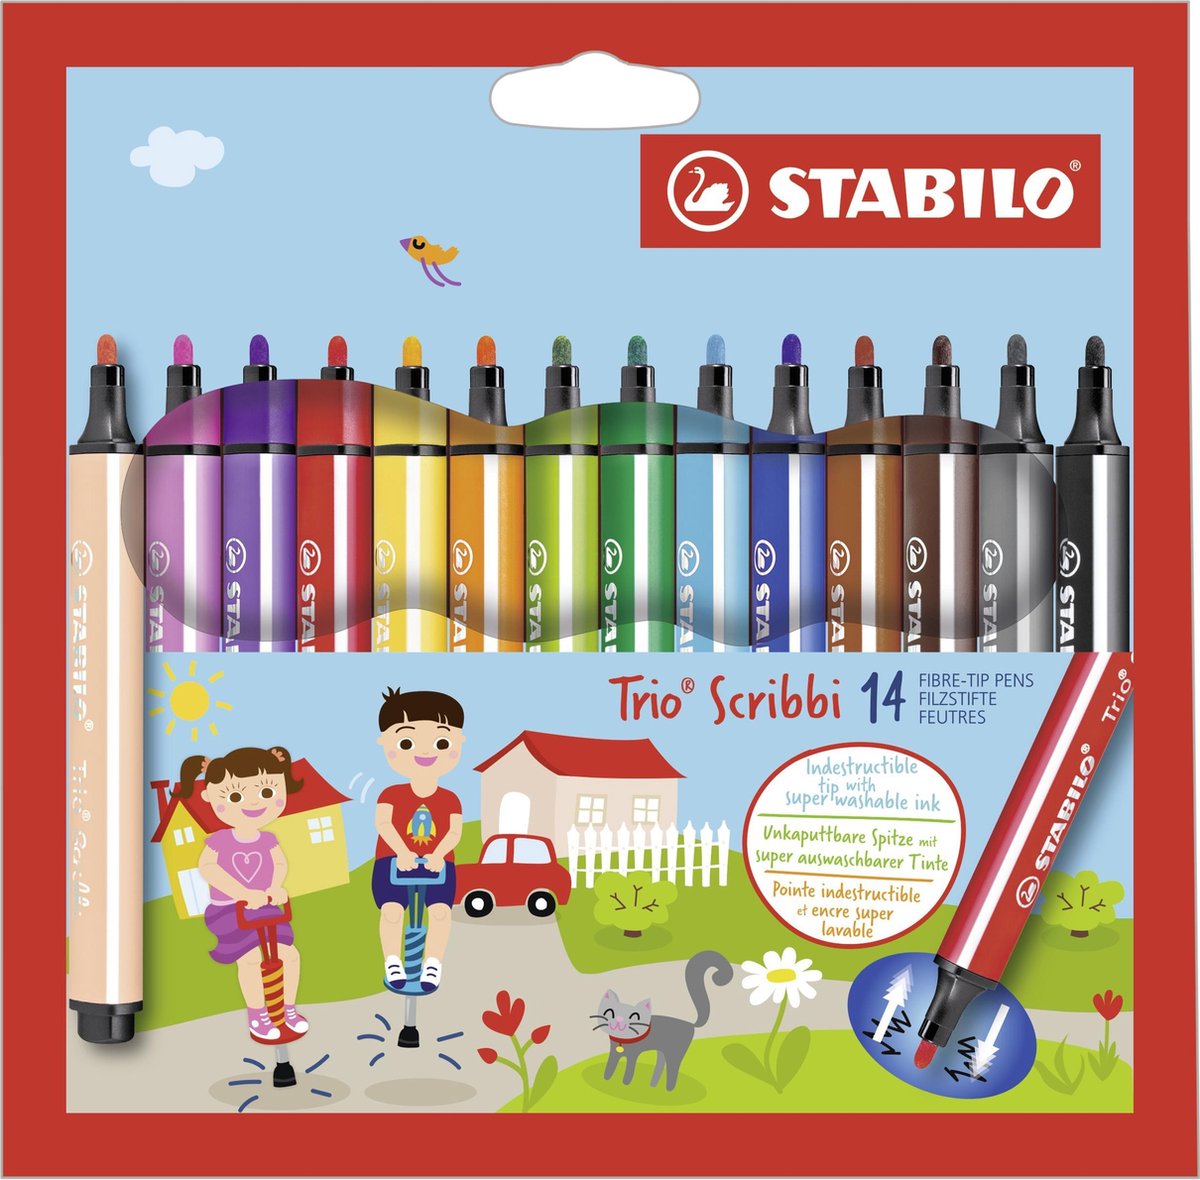 STABILO Trio Scribbi - Ergonomische Viltstift - Onverwoestbaar Door Meeverende Schrijfpunt - Etui met 14 Kleuren